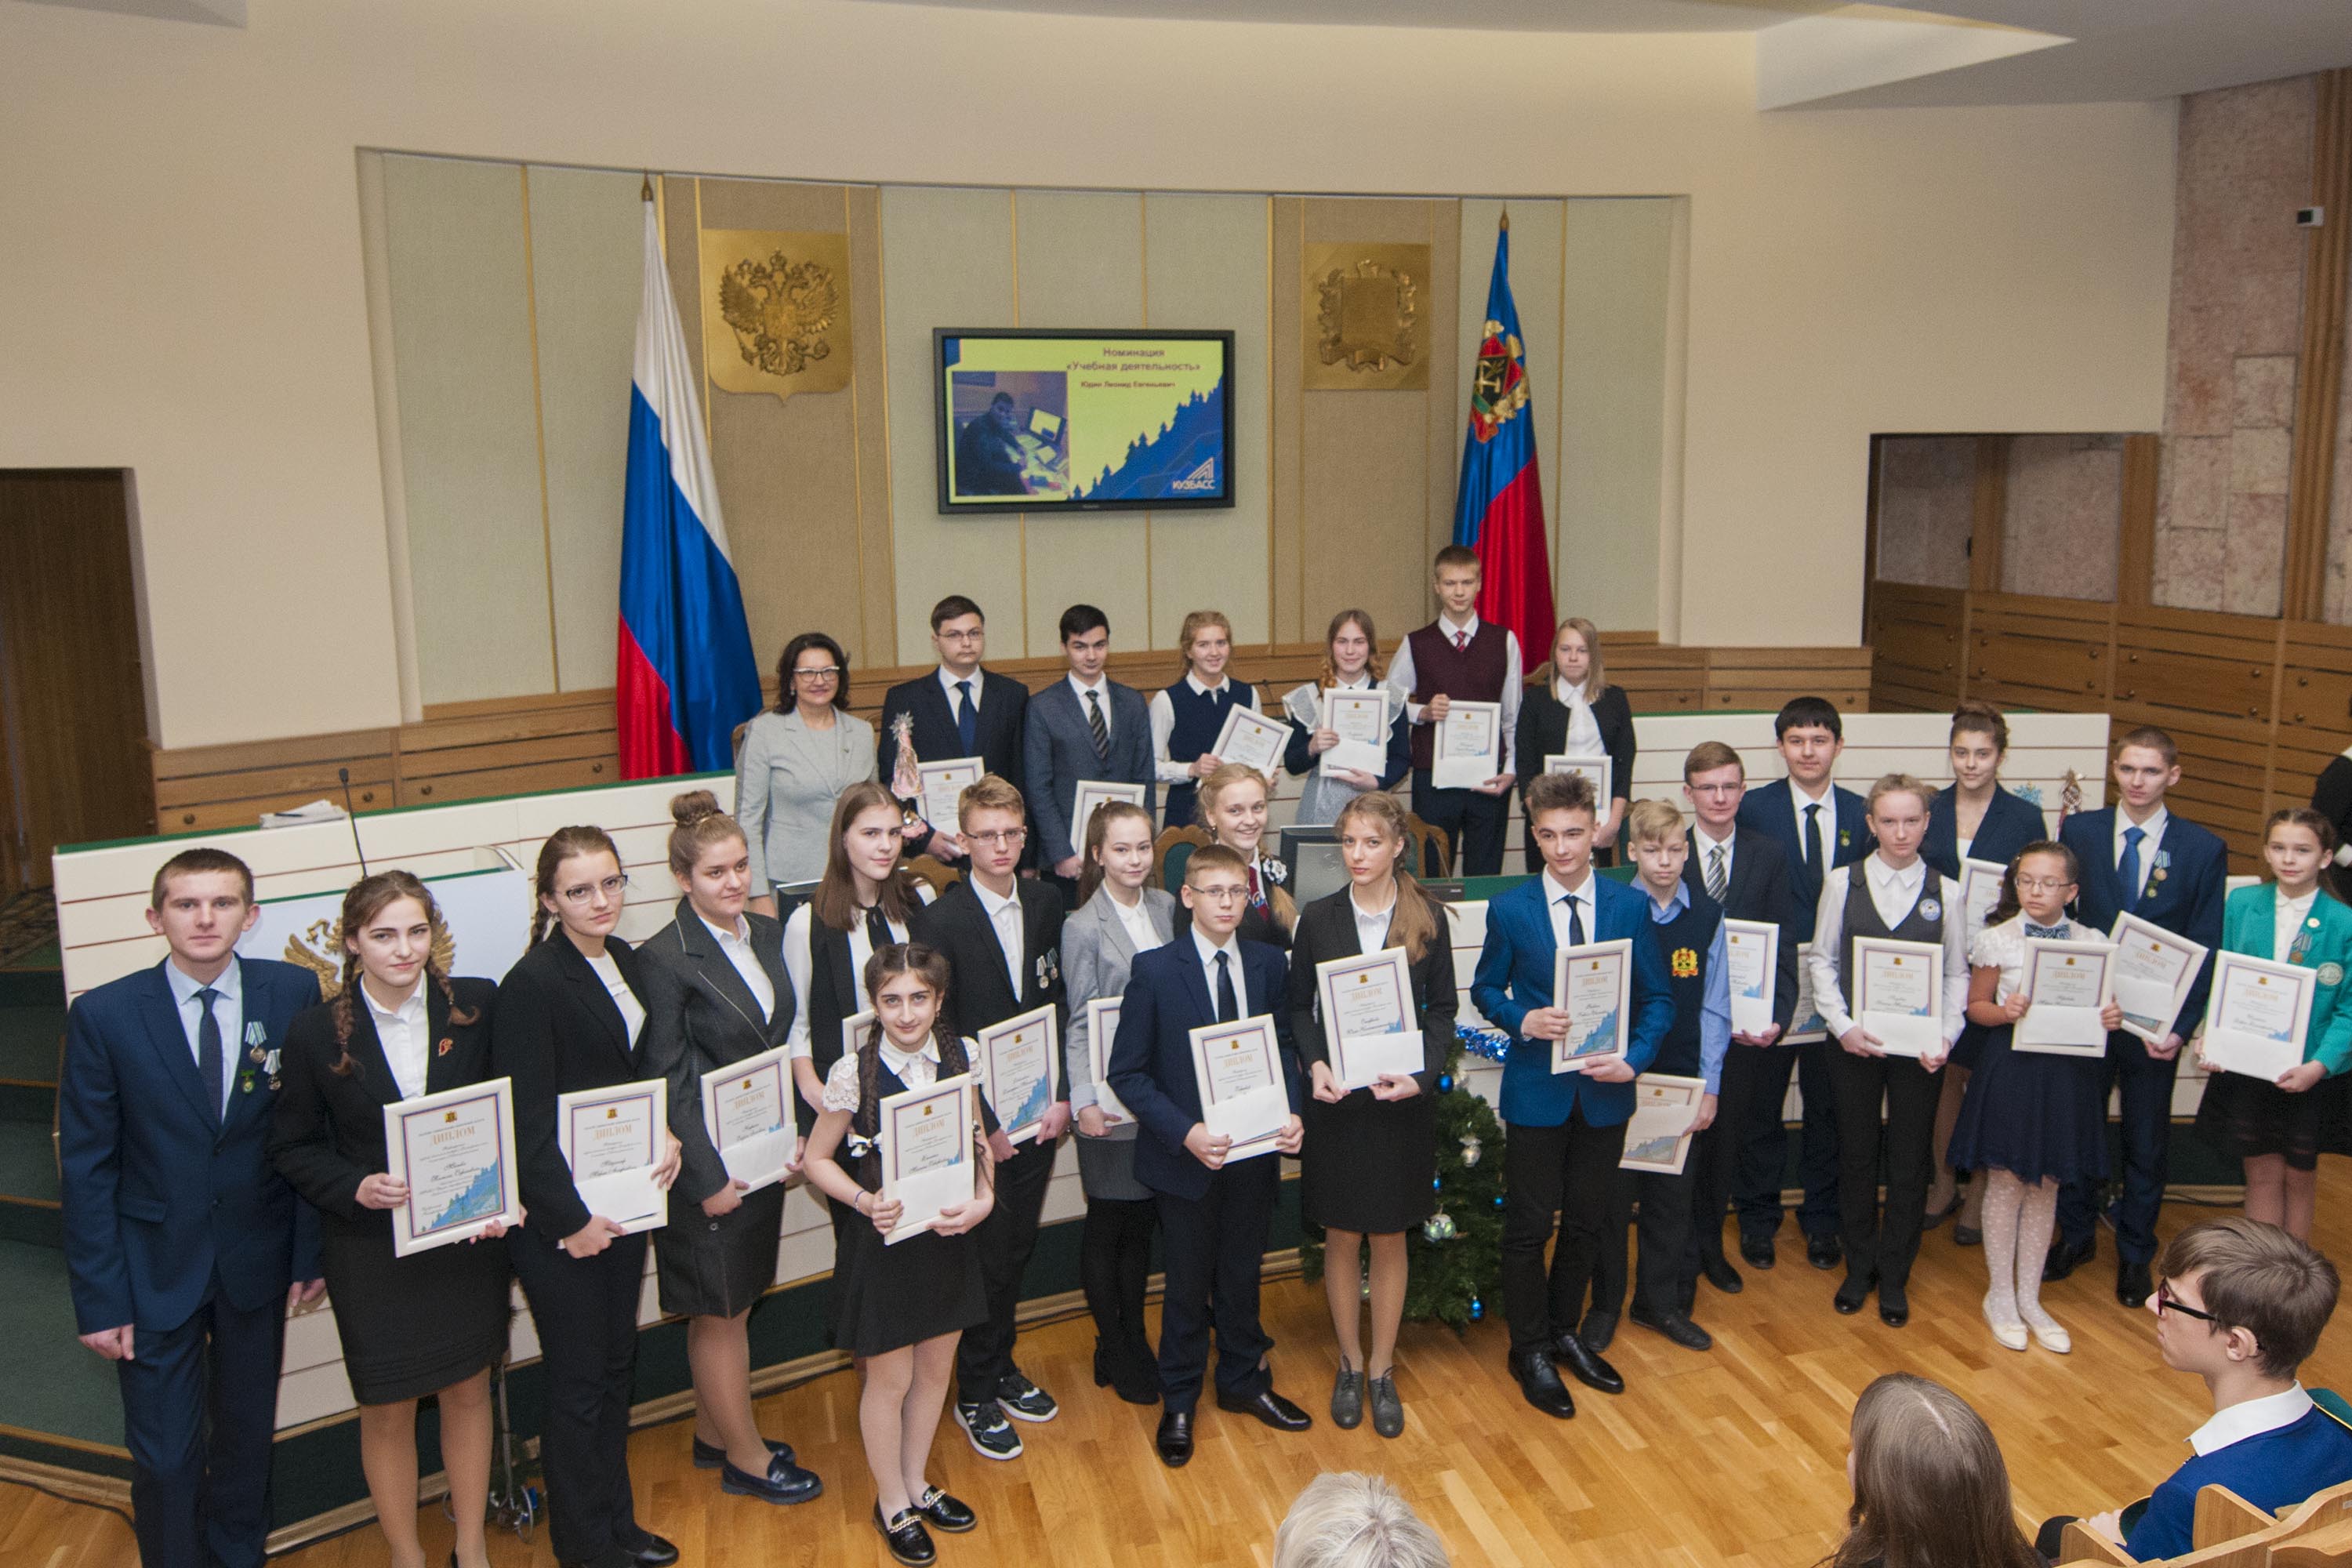  Победителей губернаторской премии «Достижения юных» чествовали в областной администрации